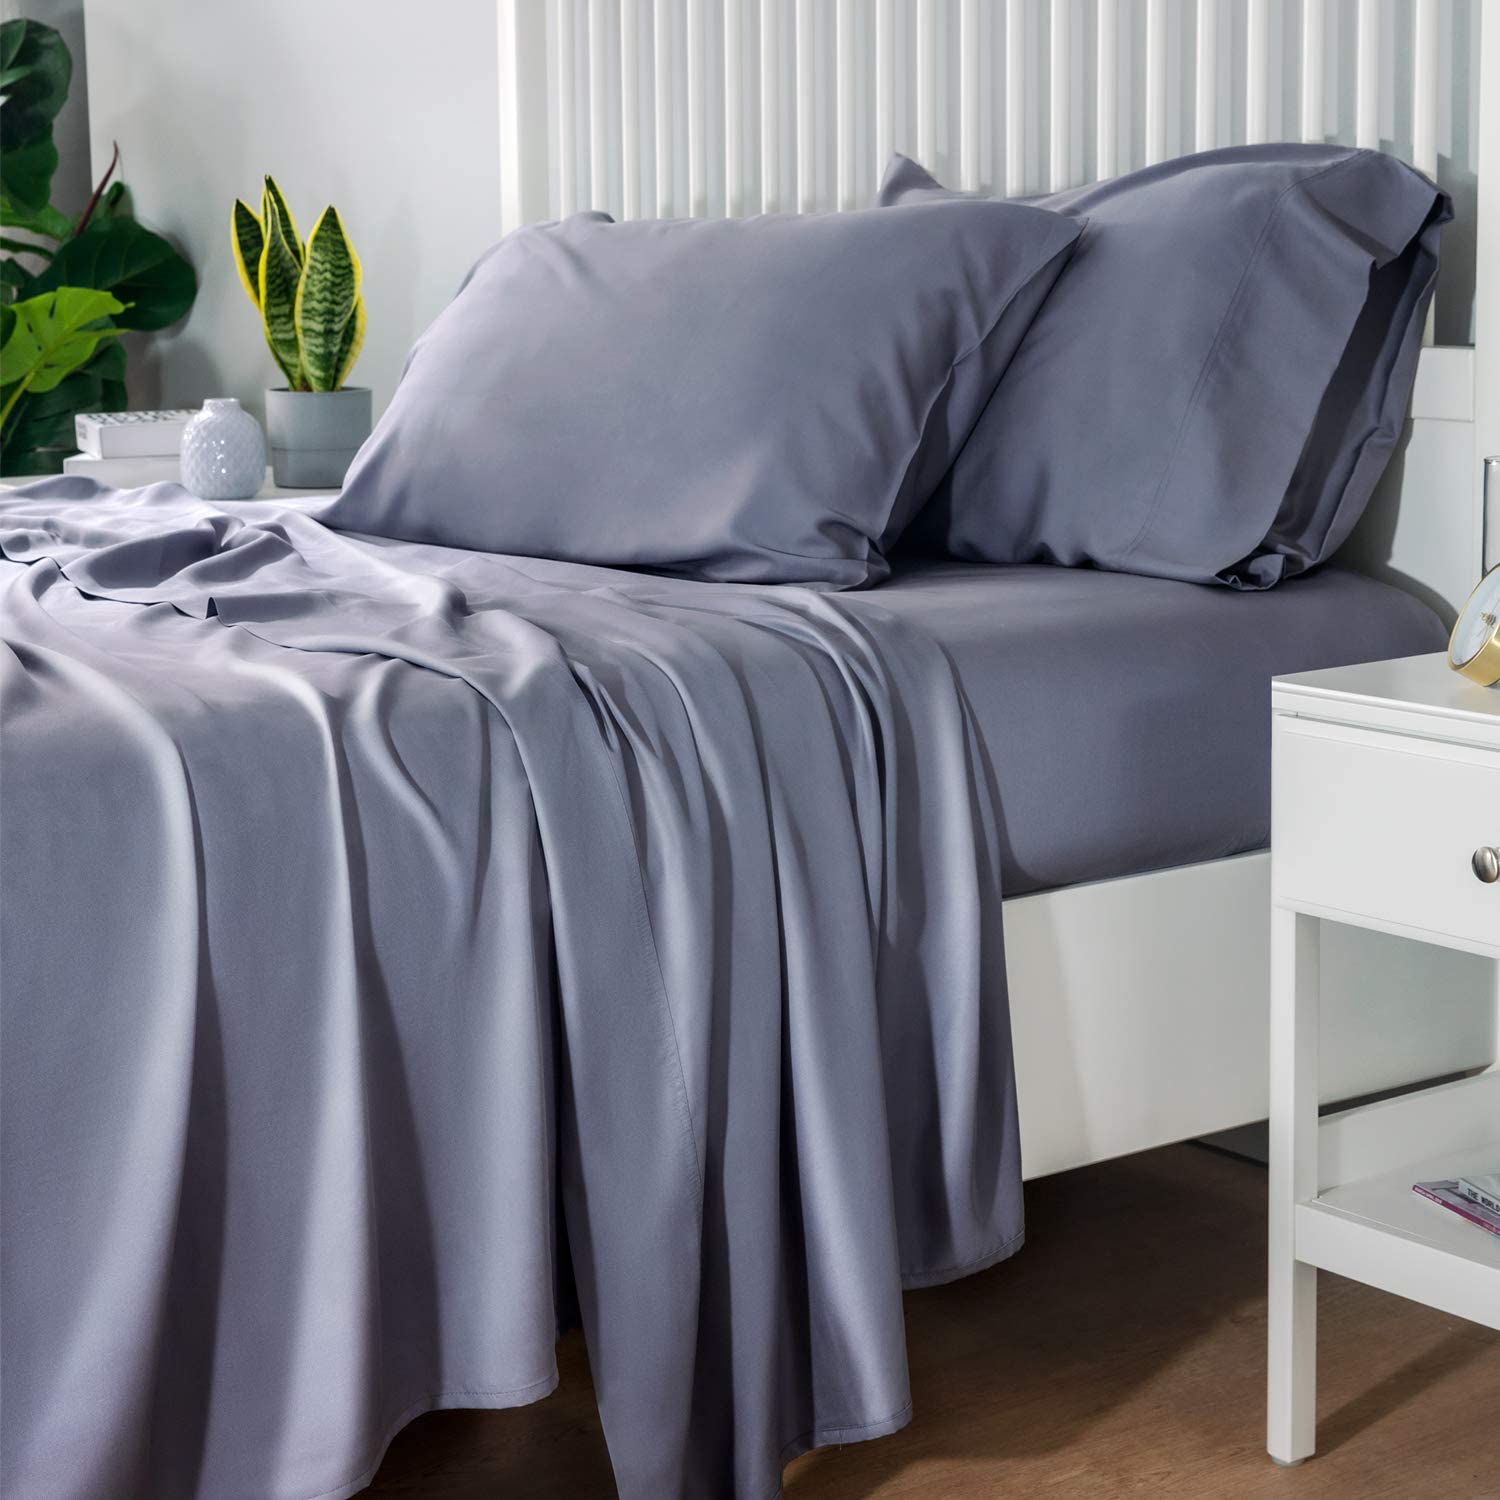 Bedsure 100% Bamboo Sheets King Size Cooling Sheets Deep Pocket Bed Sheets-Super